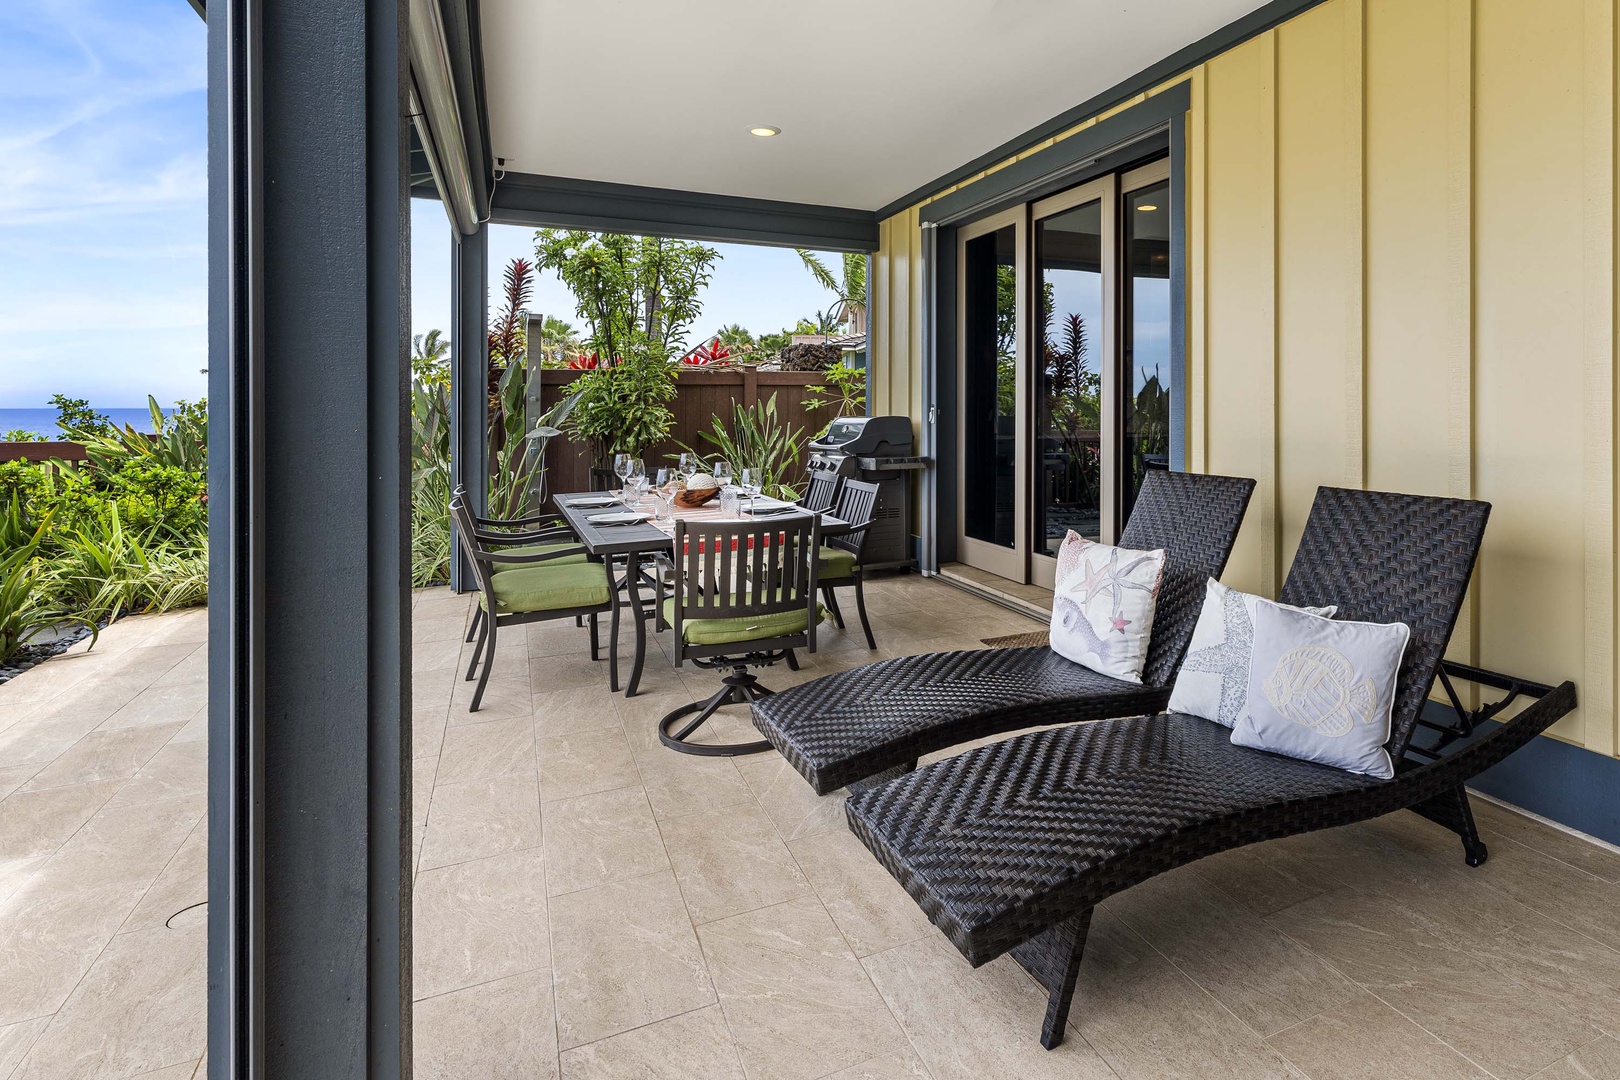 Kailua Kona Vacation Rentals, Holua Kai #20 - Spacious Lanai with a plethora of seating options